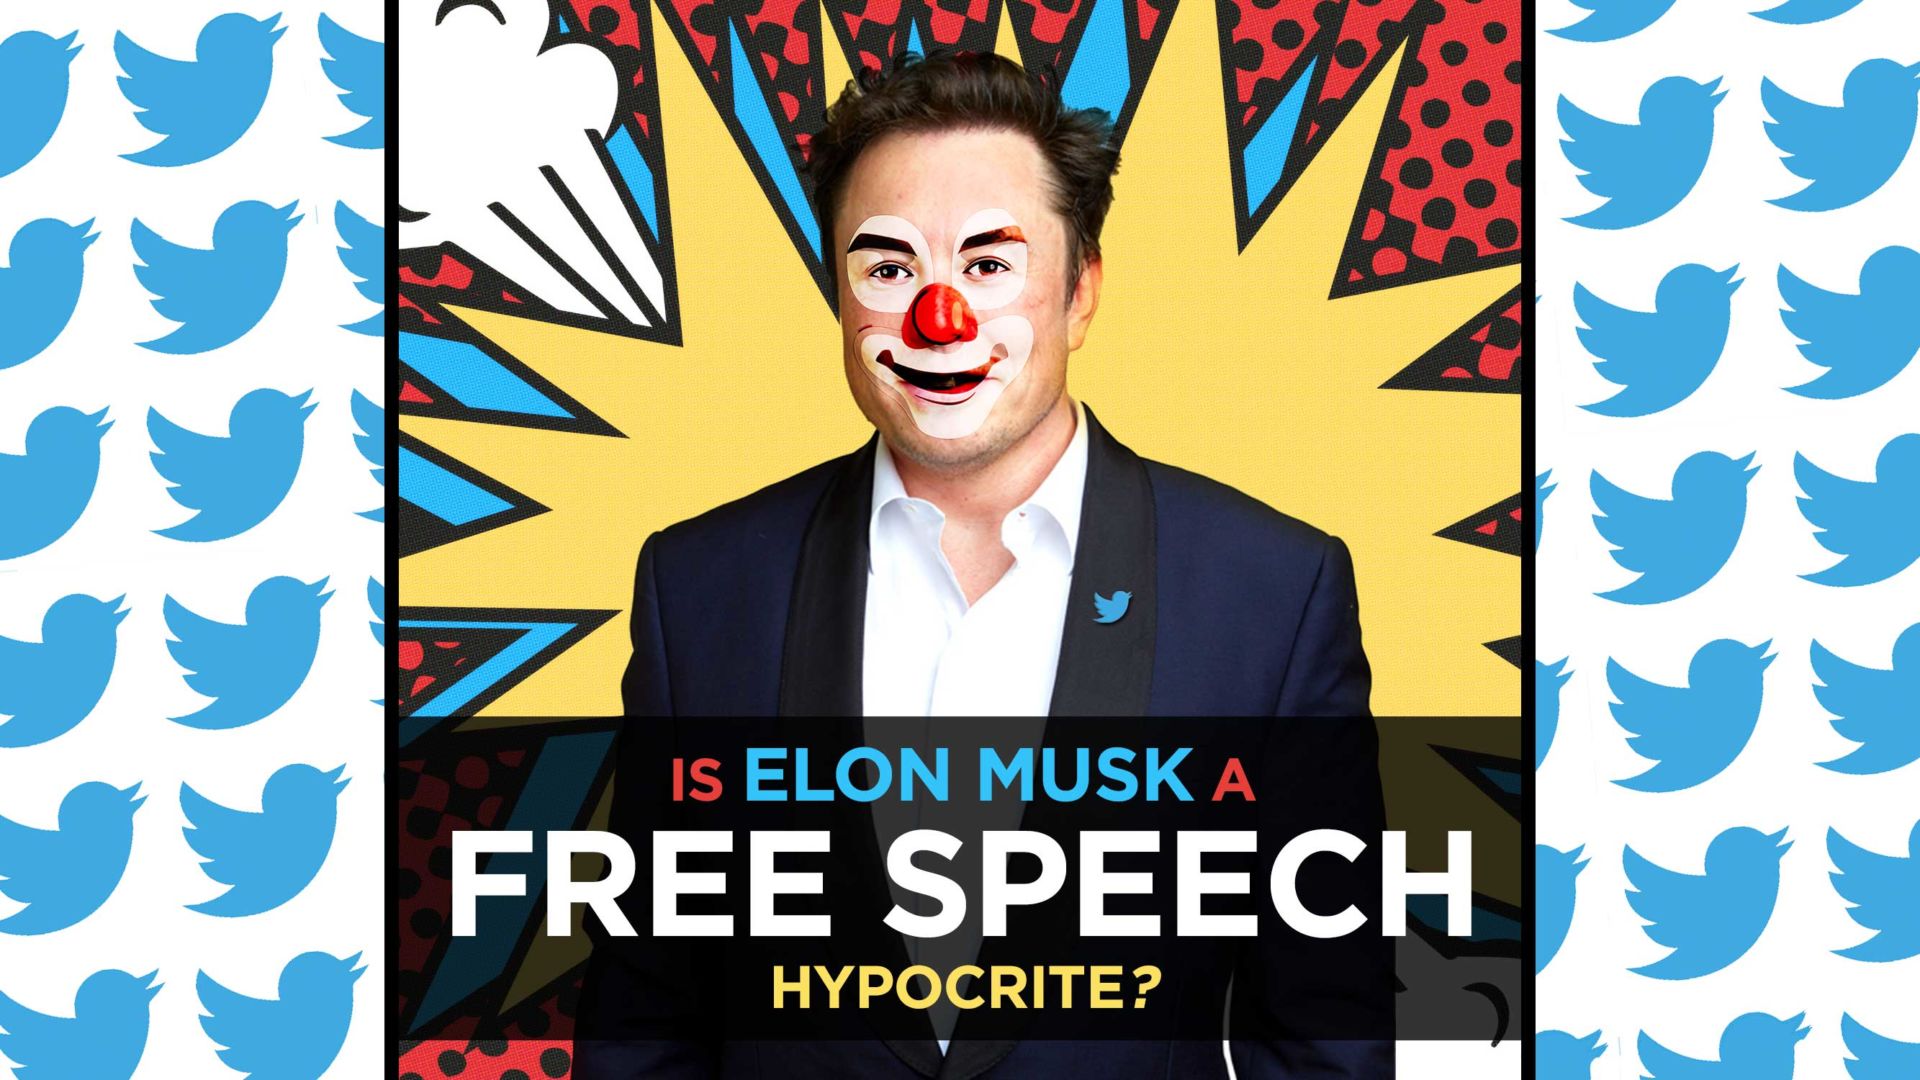 Elon Musk Is A Free Speech Hypocrite, Not A Free Speech Absolutist